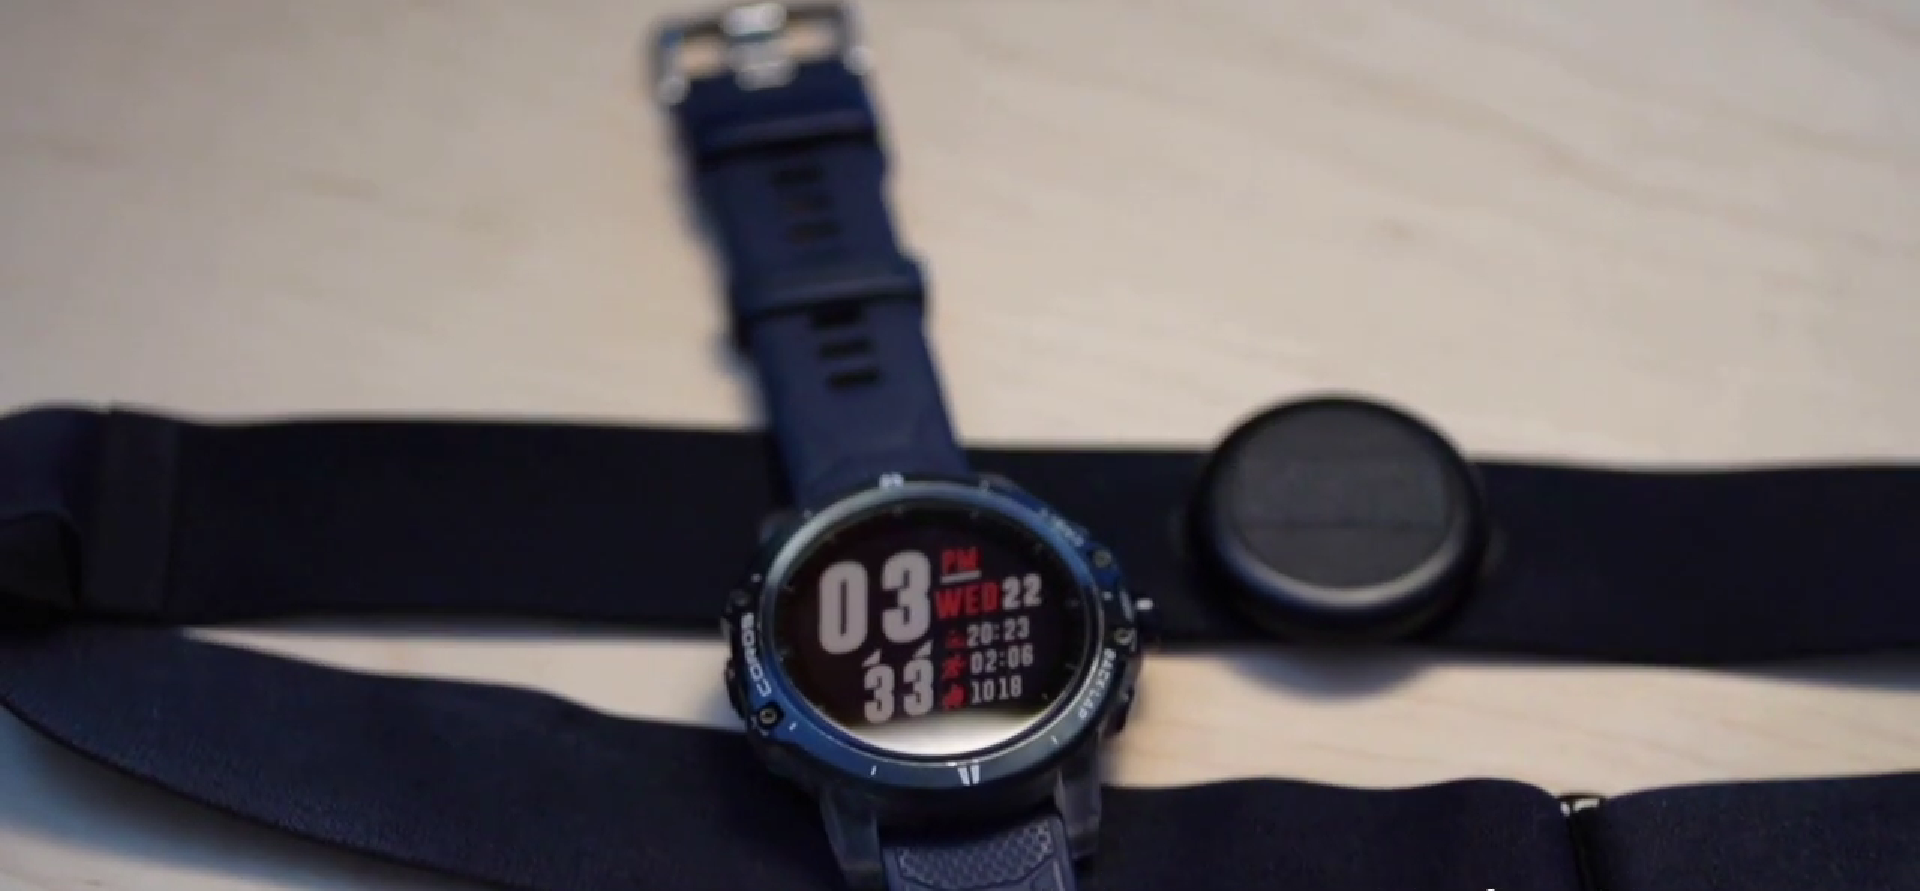 Cómo emparejar tu reloj Coros con accesorios Bluetooth: Tutorial fácil y rápido | Tutoriales